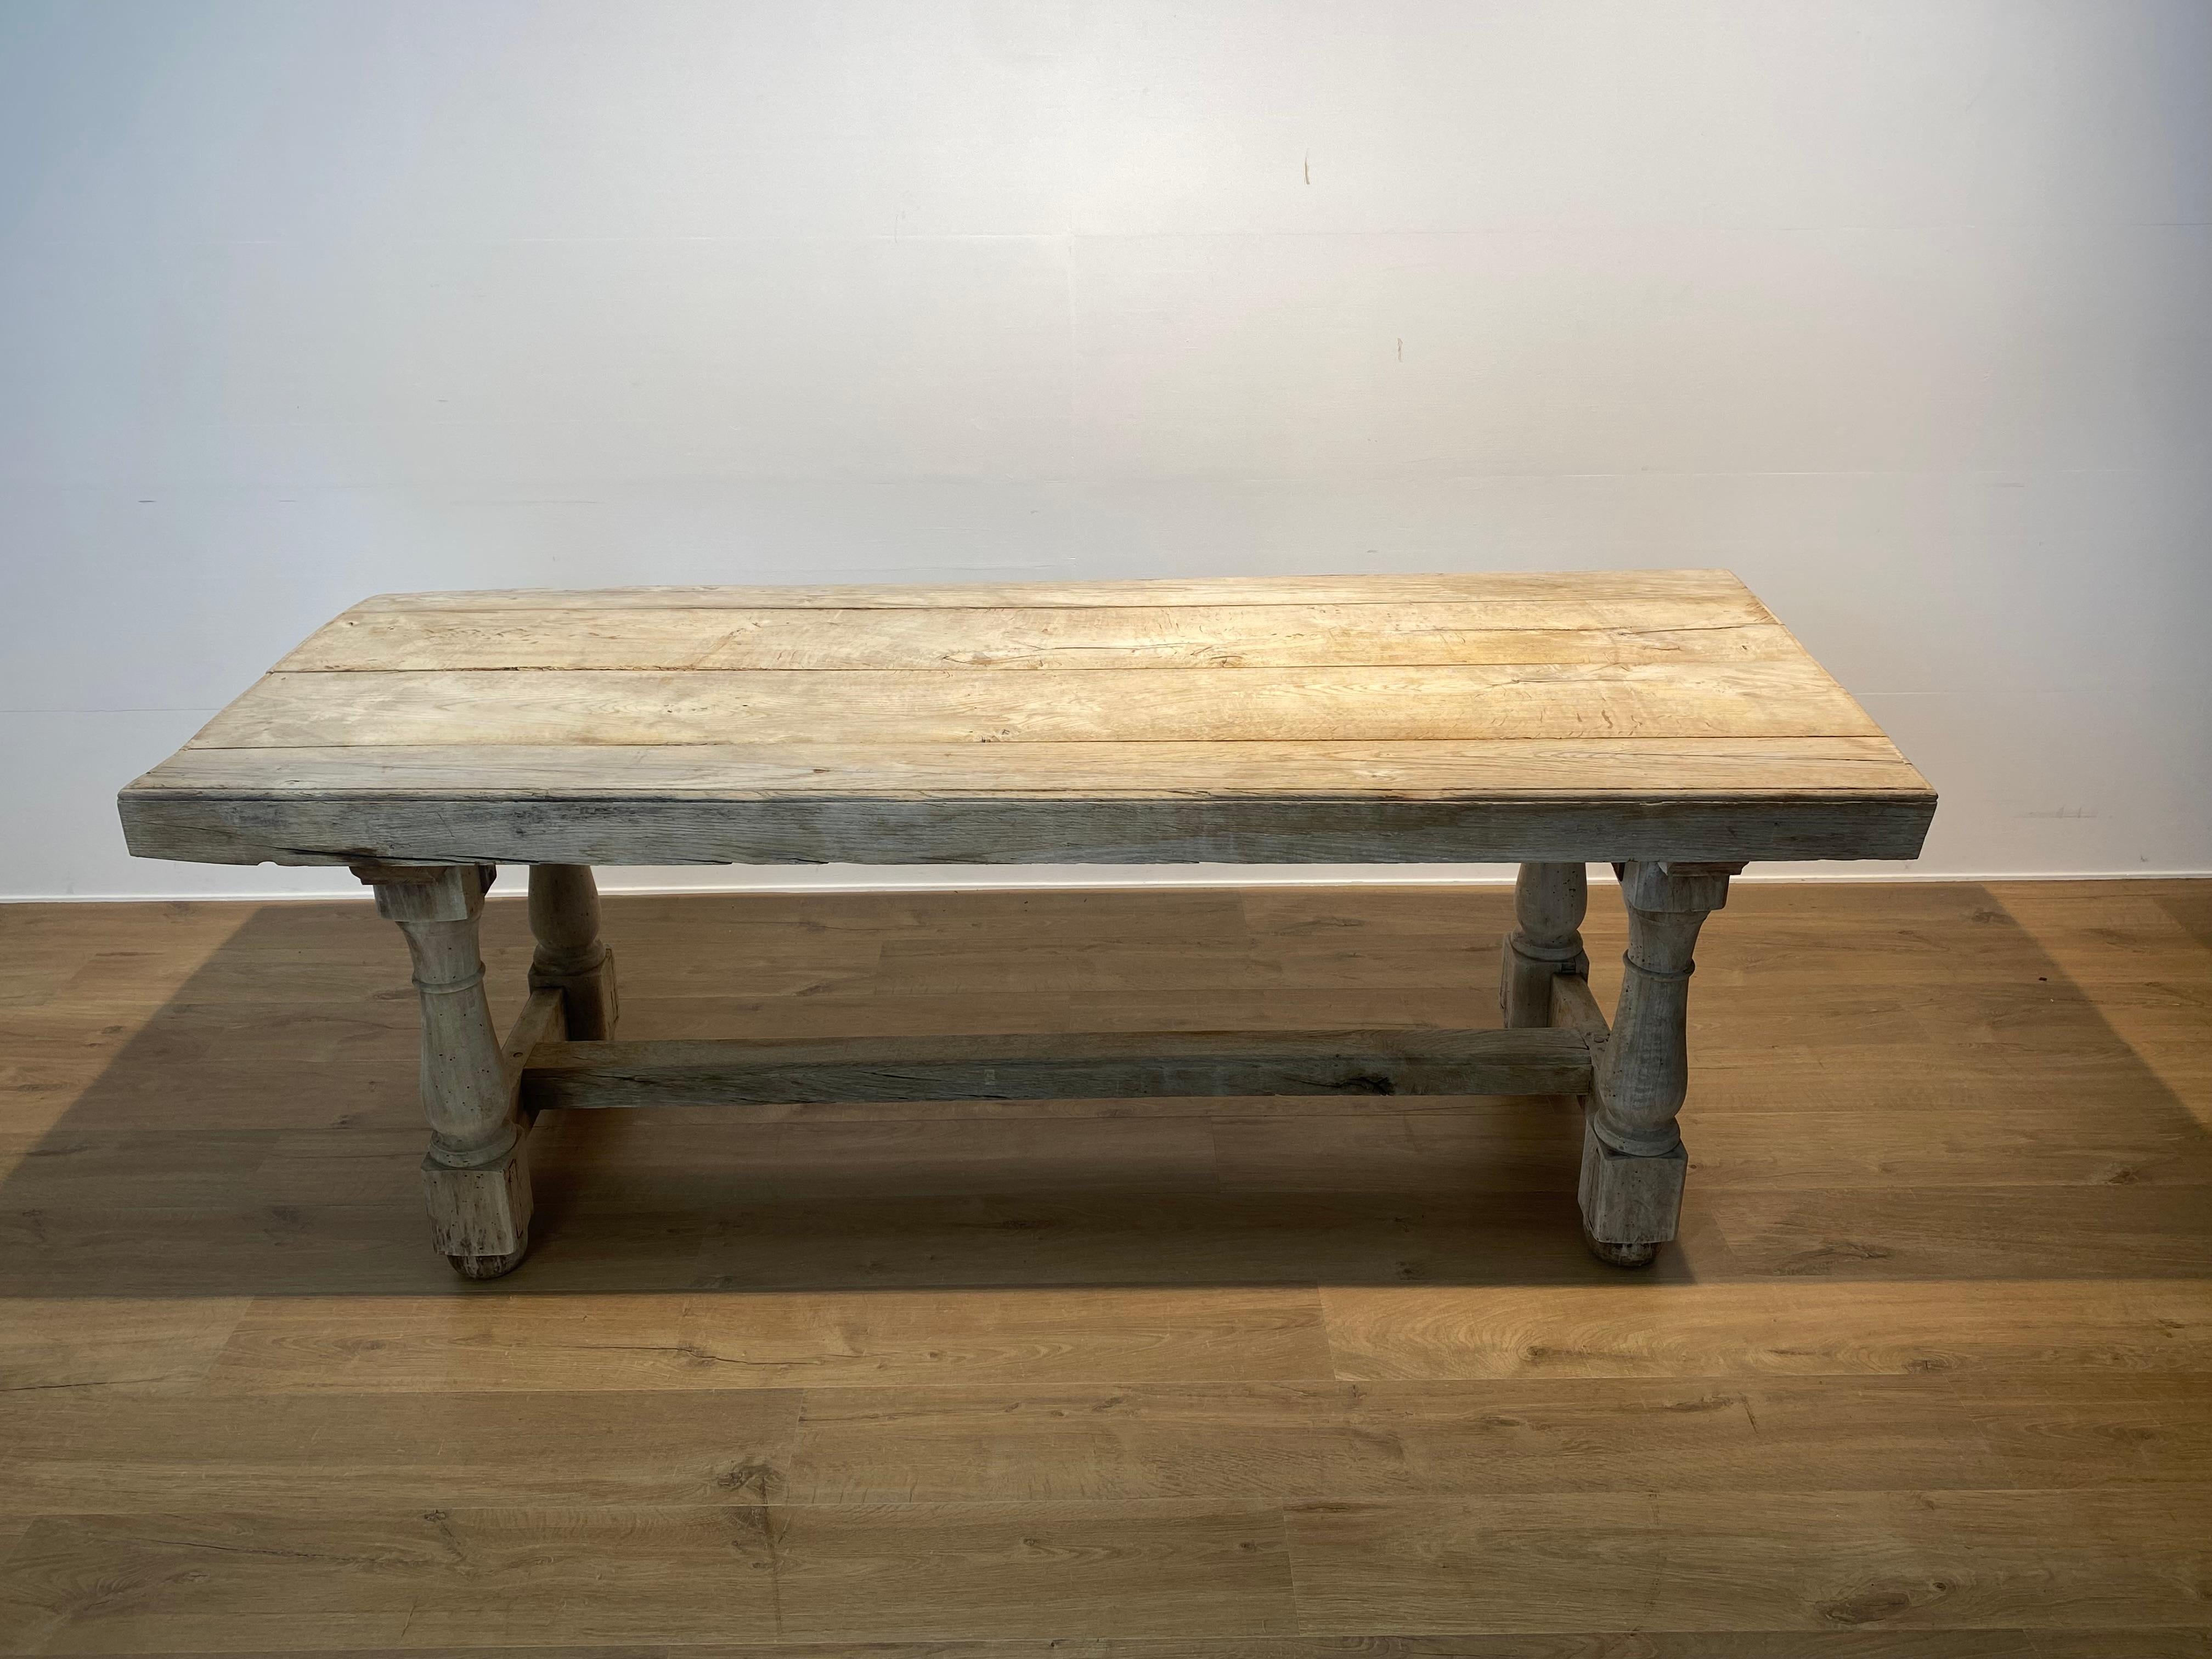 Centre de table brutaliste français antique provenant d'une cuisine,
d'environ 1790 dans un chêne blanchi,
belle patine et brillance du chêne blanchi,
le plateau de la table a une épaisseur de 9 cm